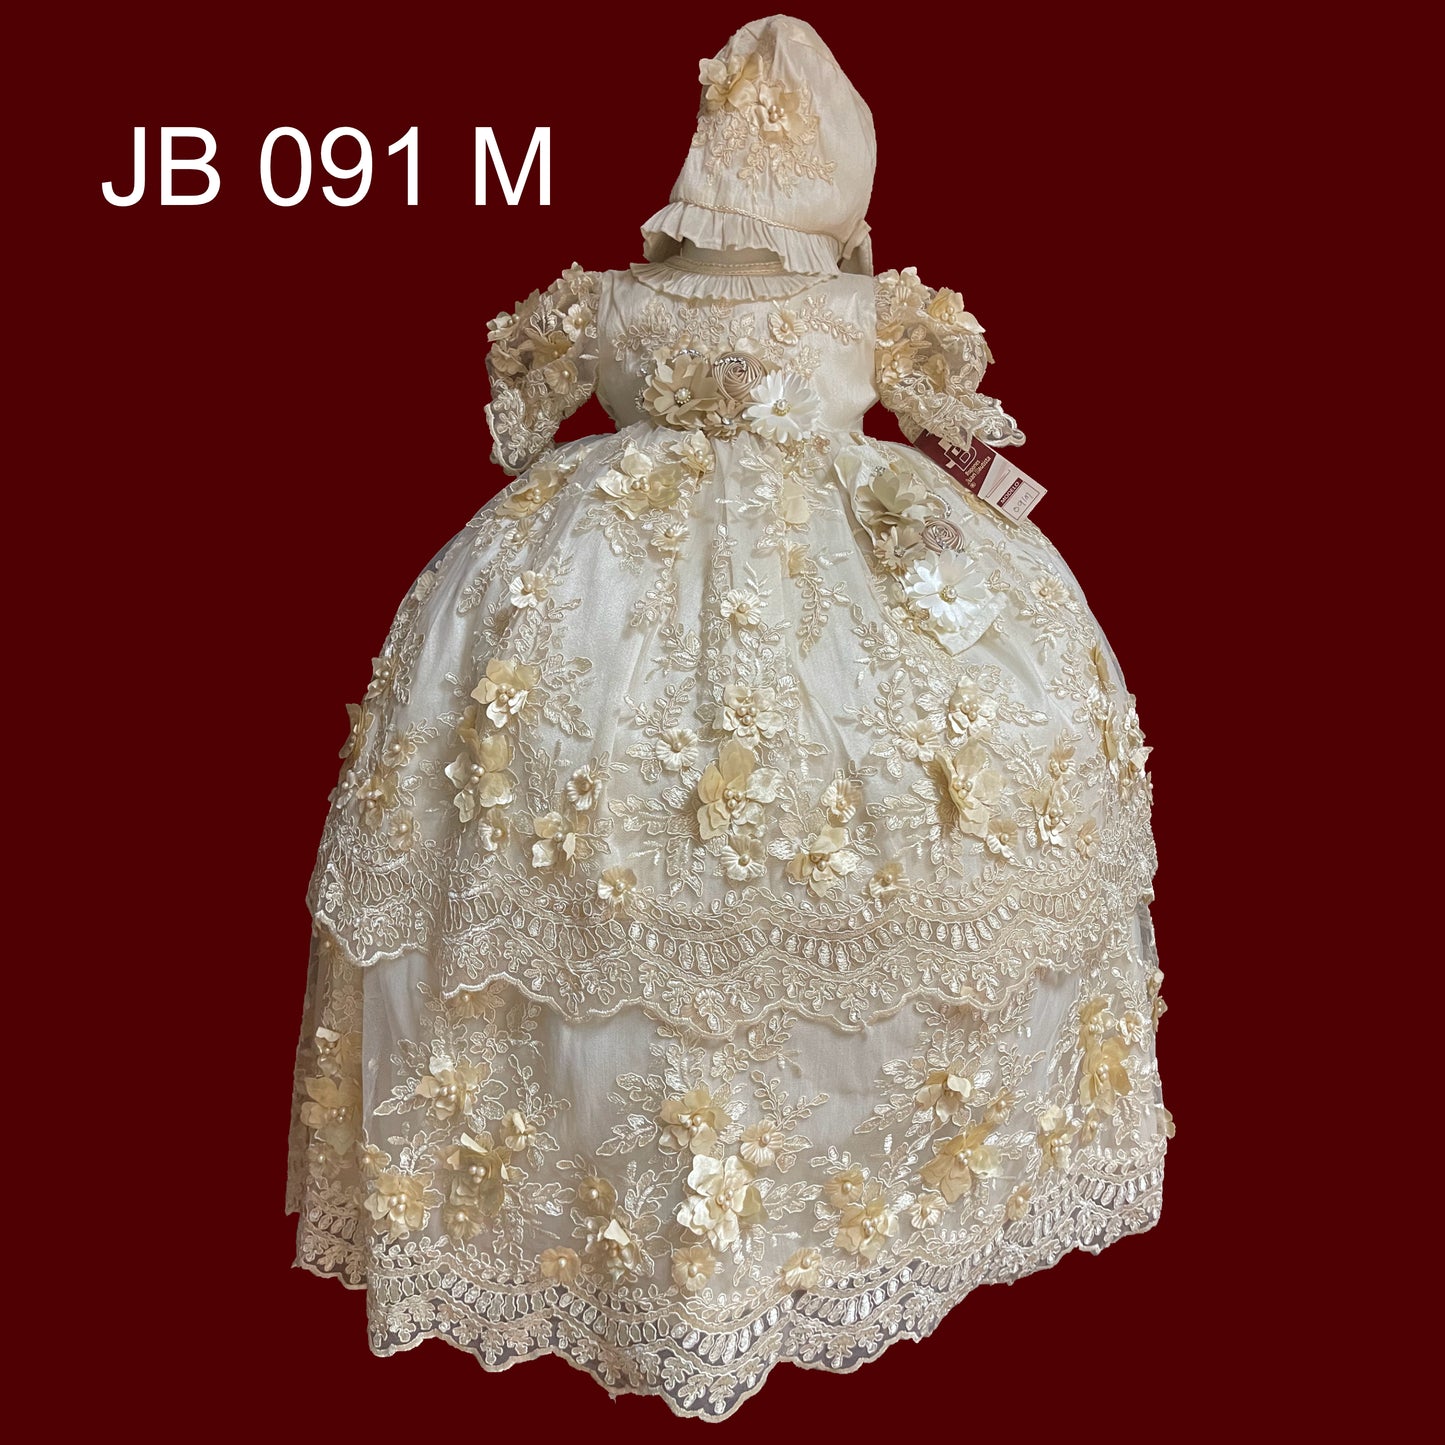 JB 091 M